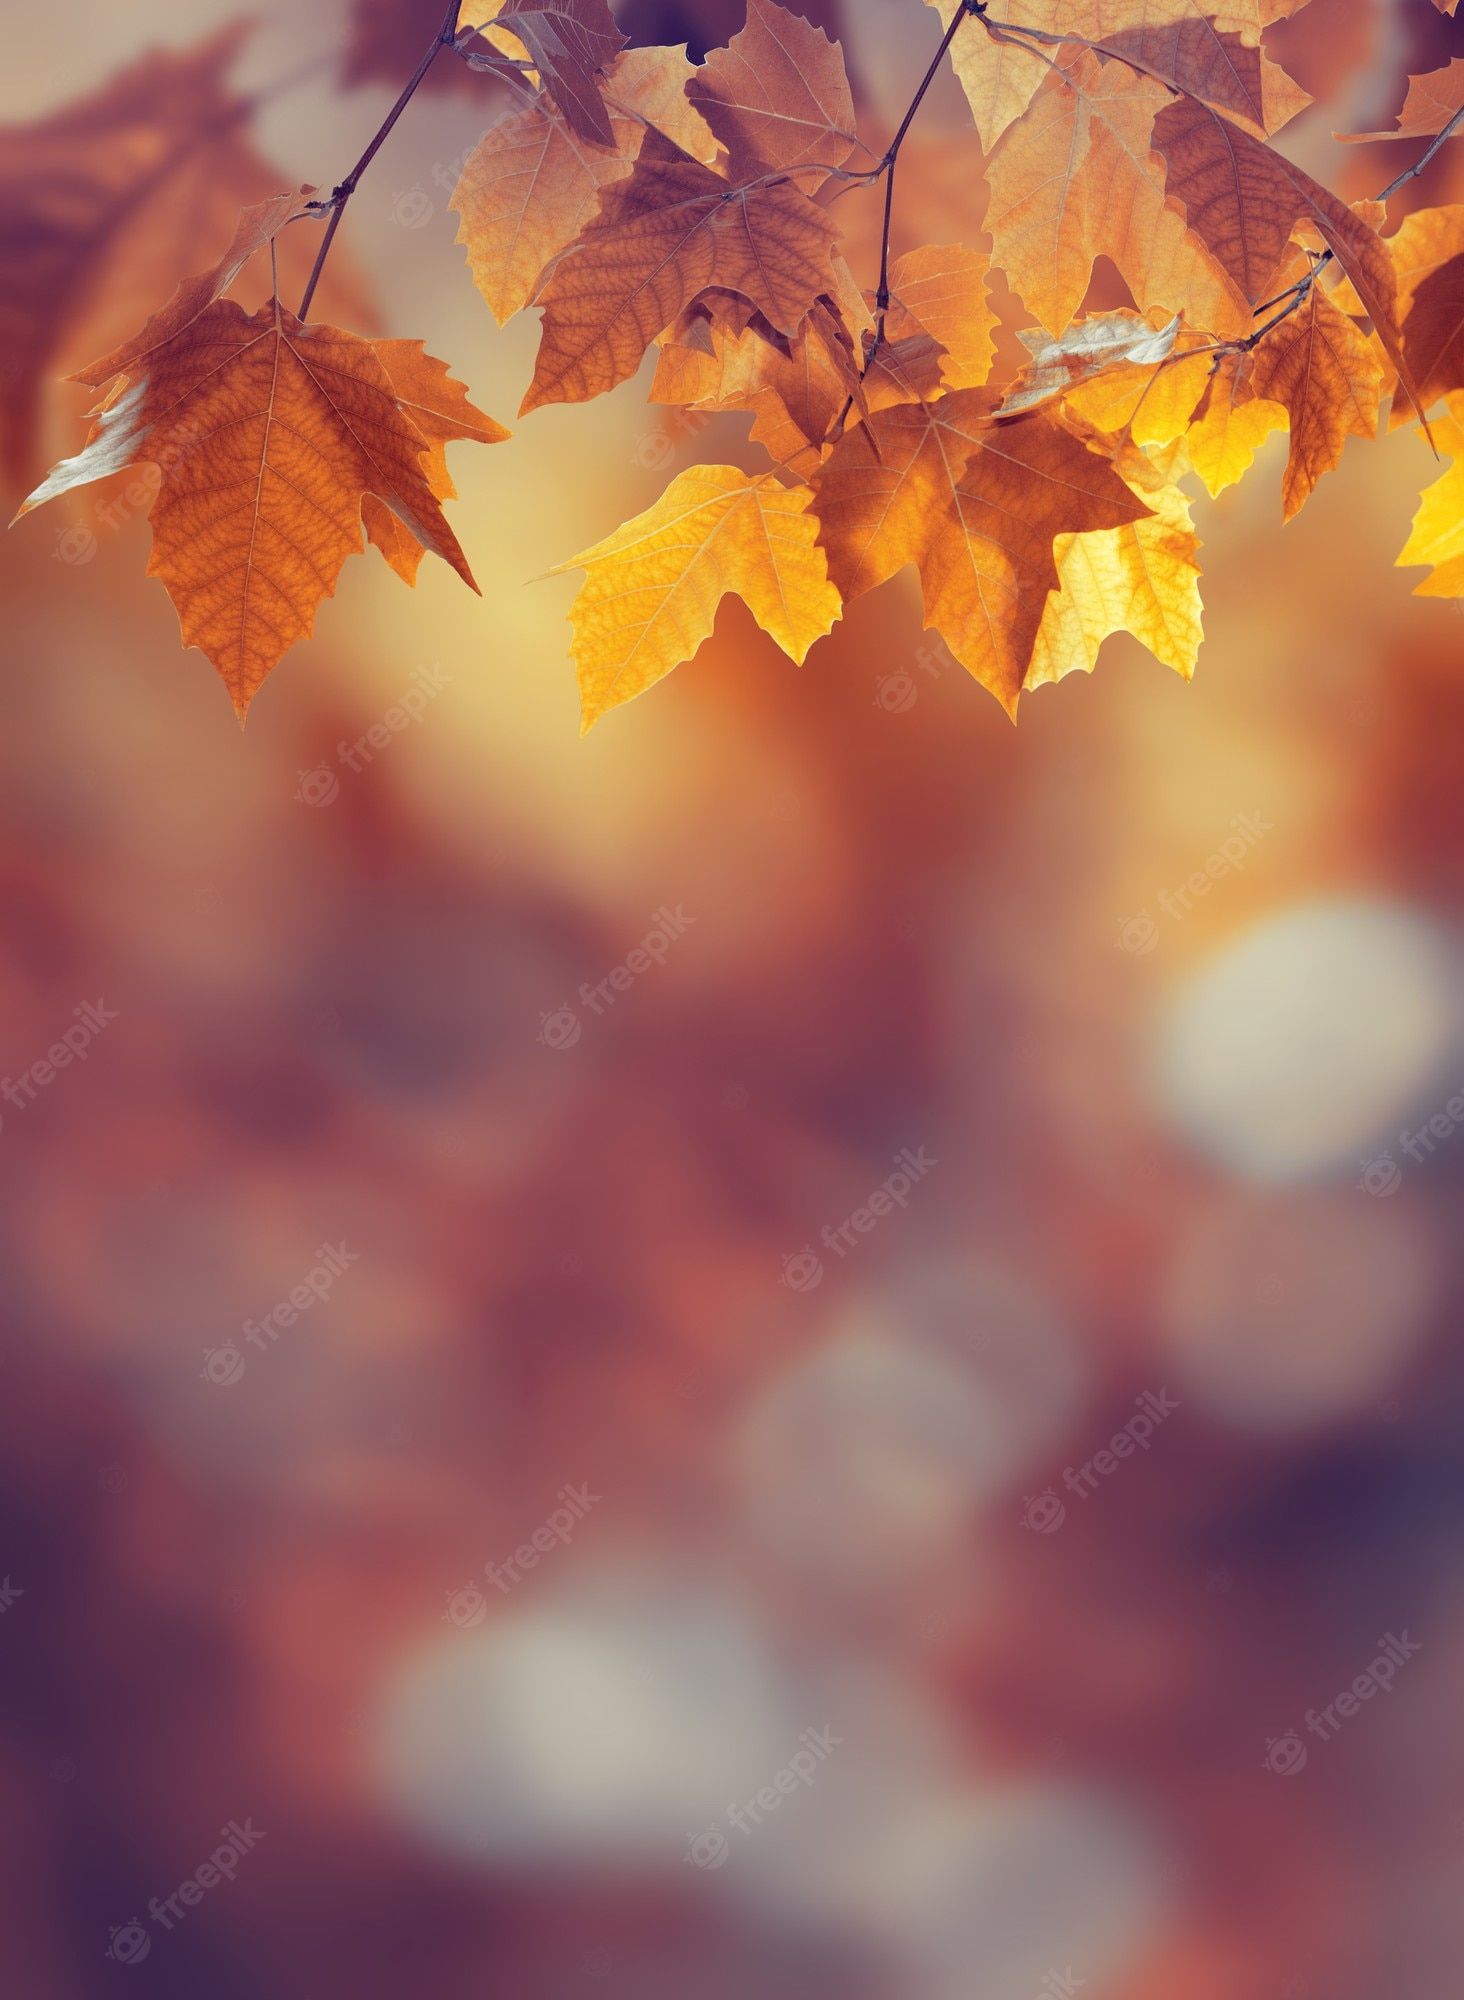 Herbst Kostenlos Hintergrundbild 1464x2000. Fotos Wallpaper, Über 62.000 hochqualitative kostenlose Stockfotos